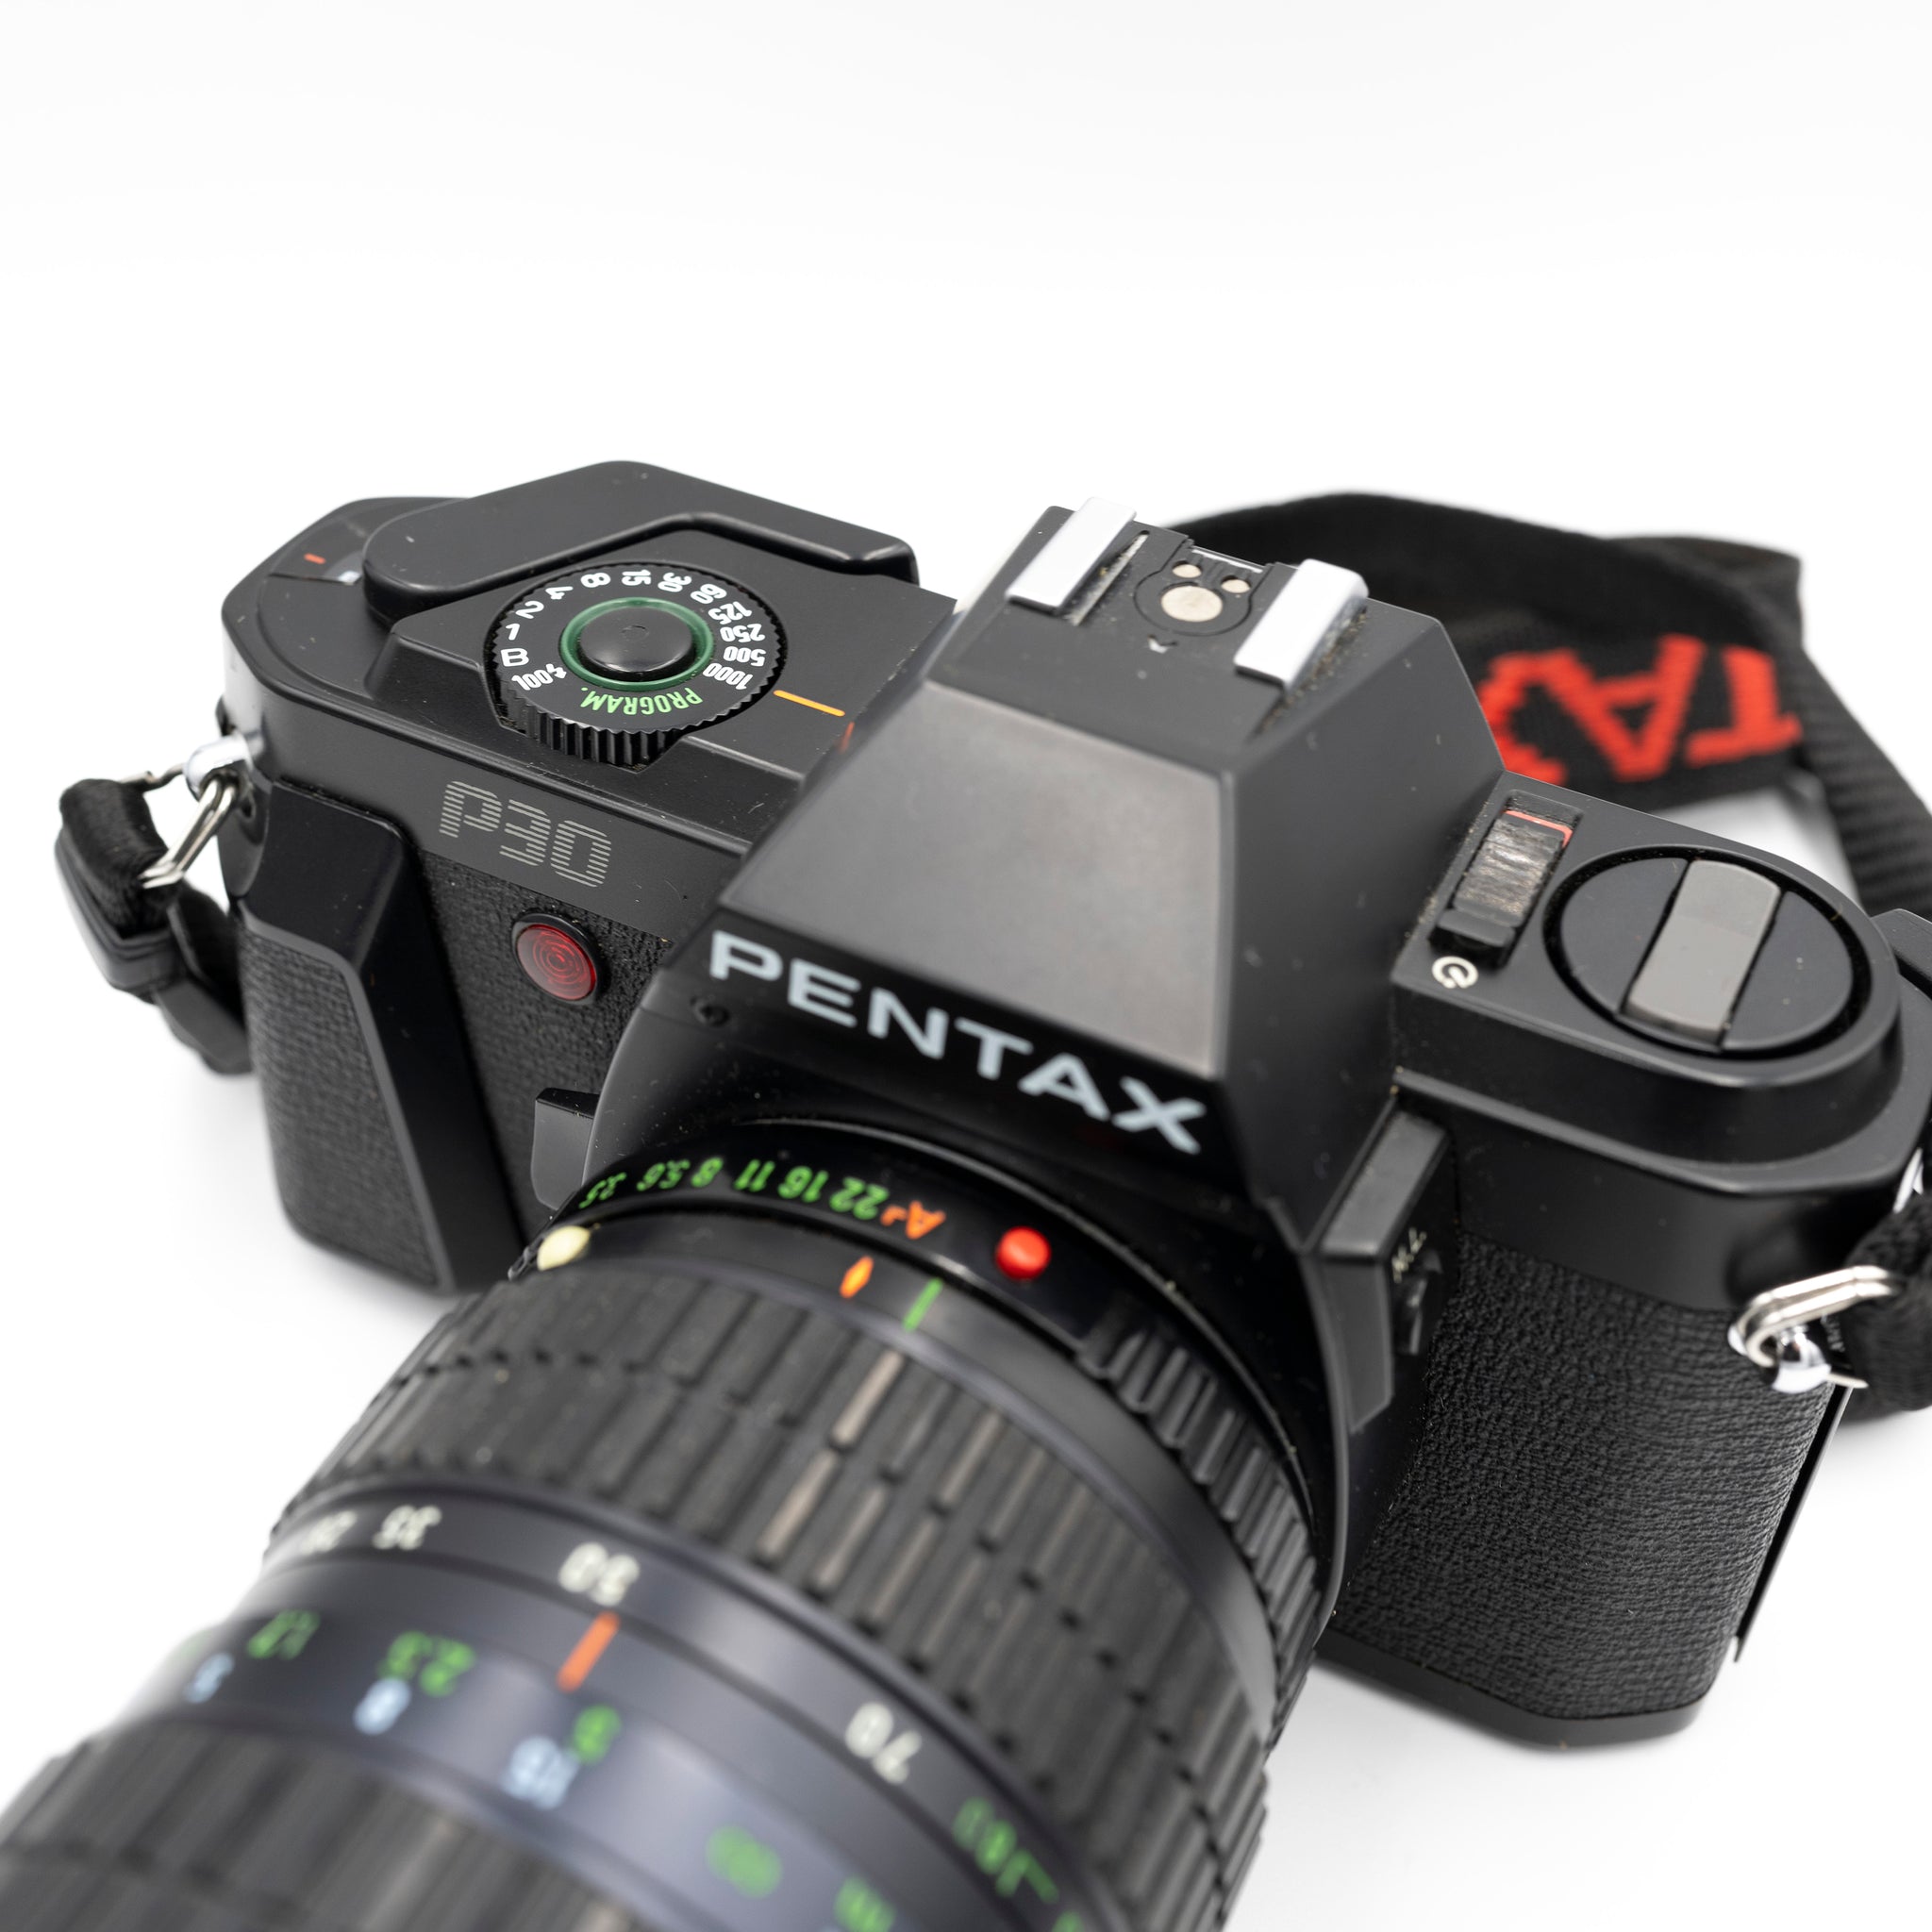 Pentax P30 + Takumar A zoom 28-80mm f/3.5-4.5